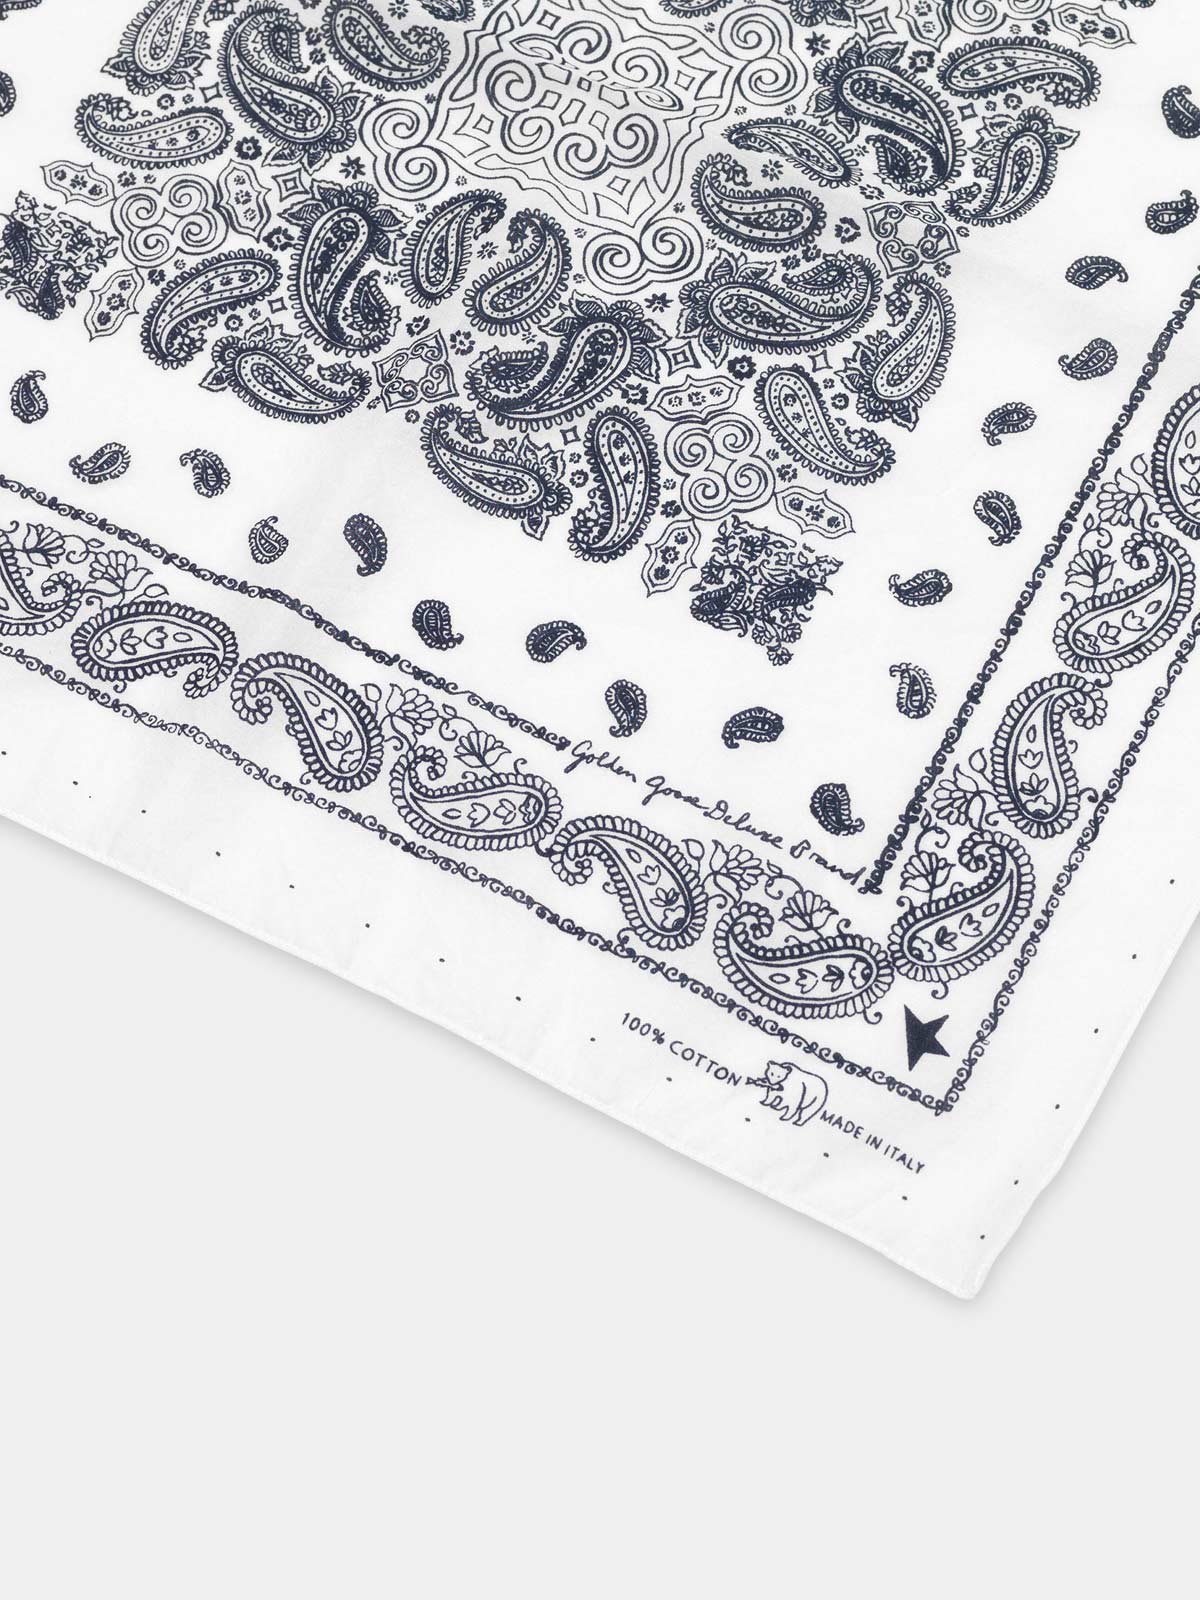 Cotton Jiro bandana with paisley pattern